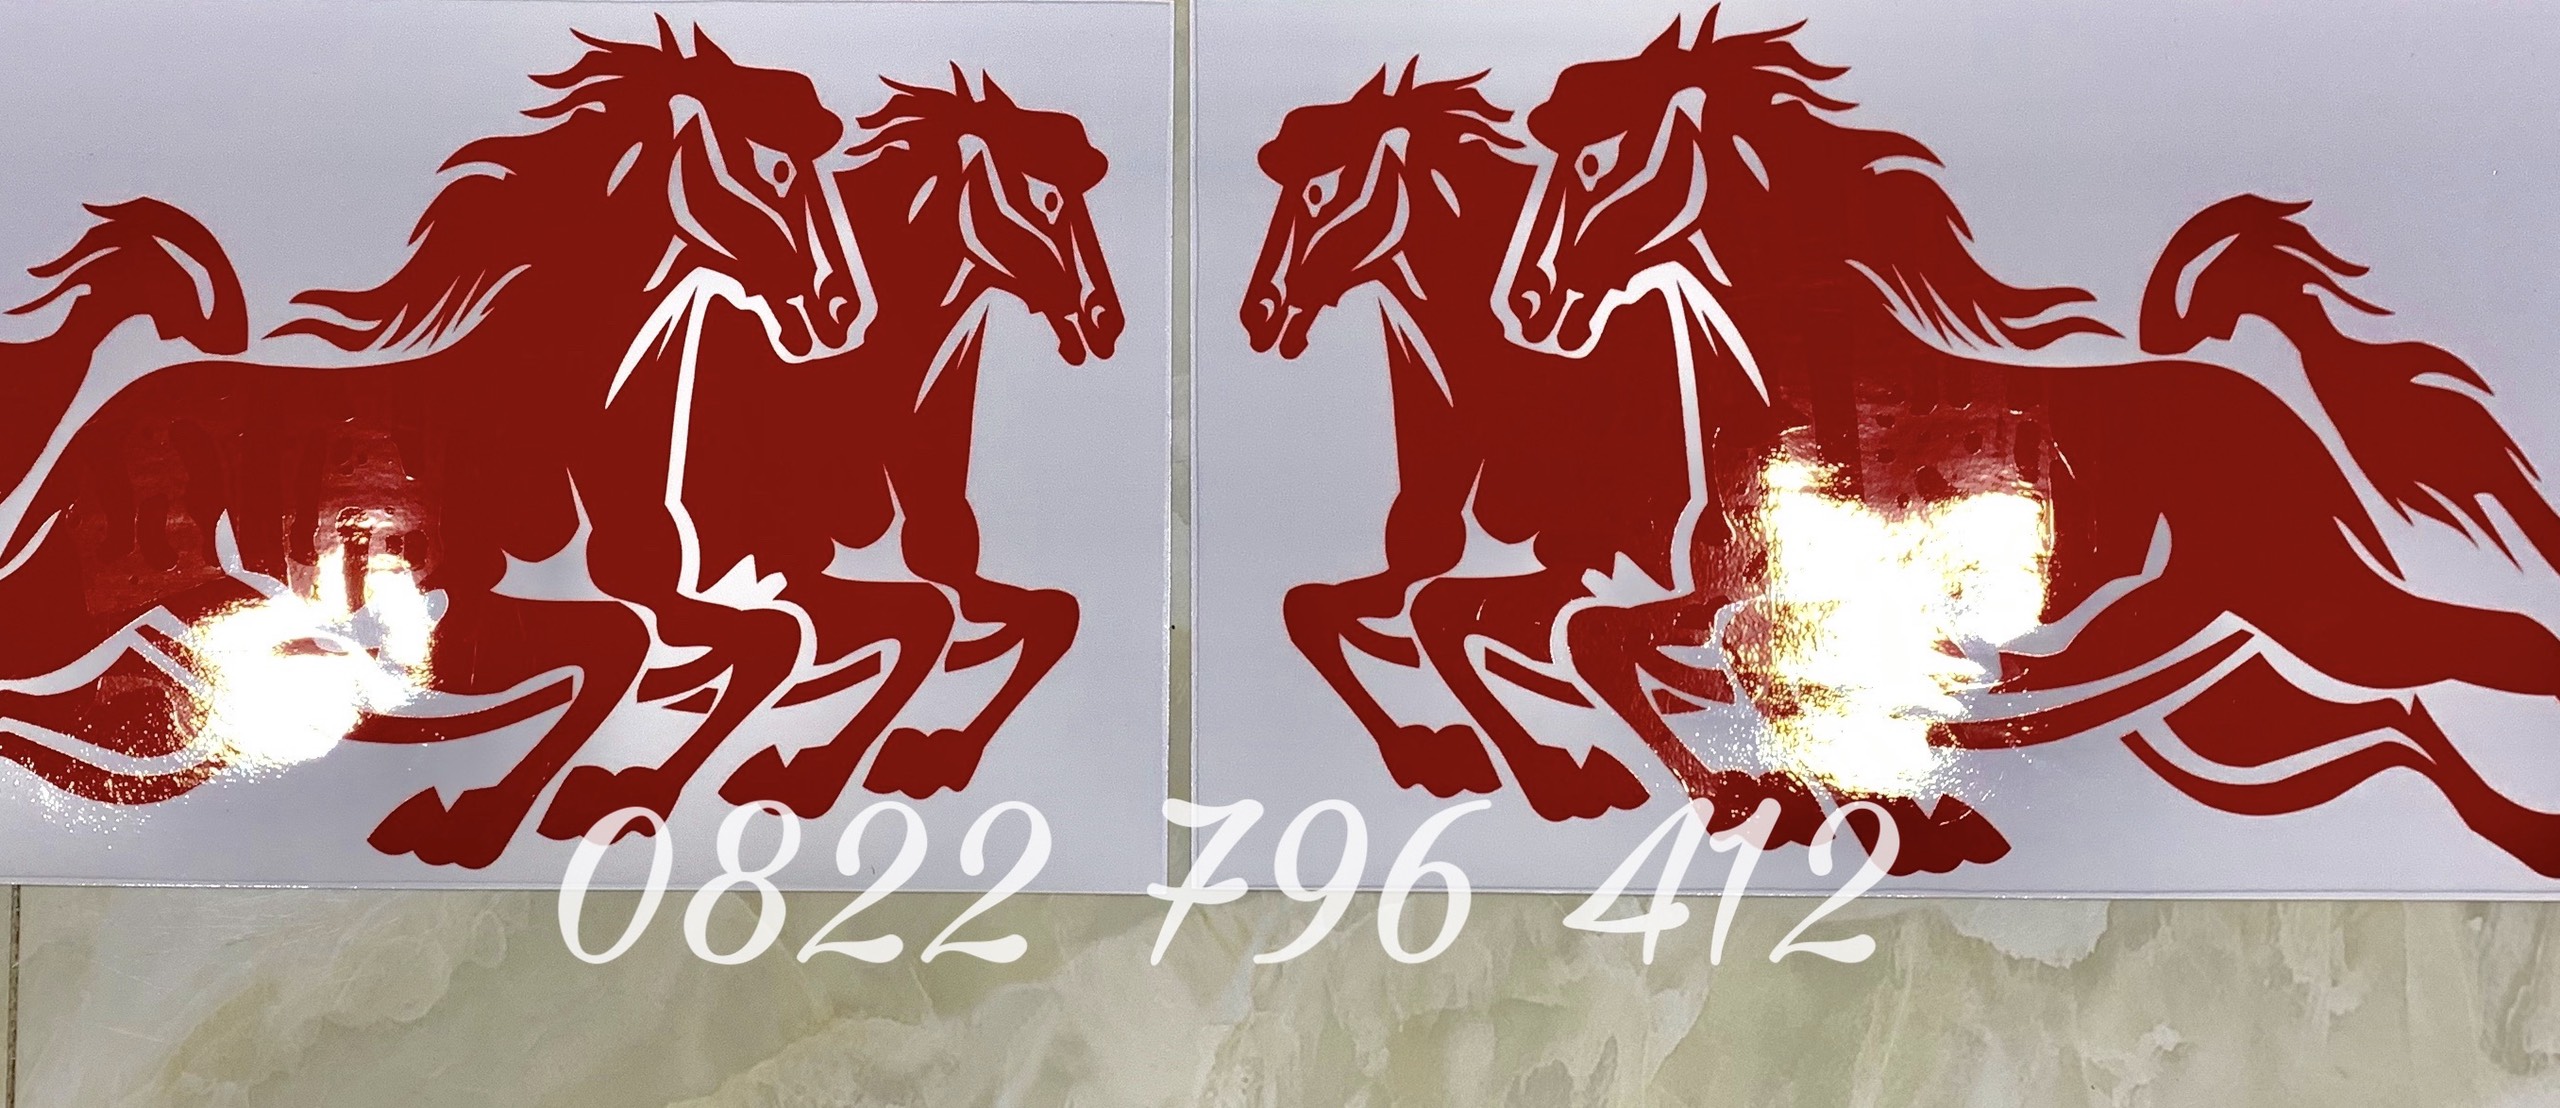 Logo hình con ngựa đẹp thẻ vector nhận dạng  Tải hình ảnh shutterstock   istockphoto 123rf  trong 5 giây